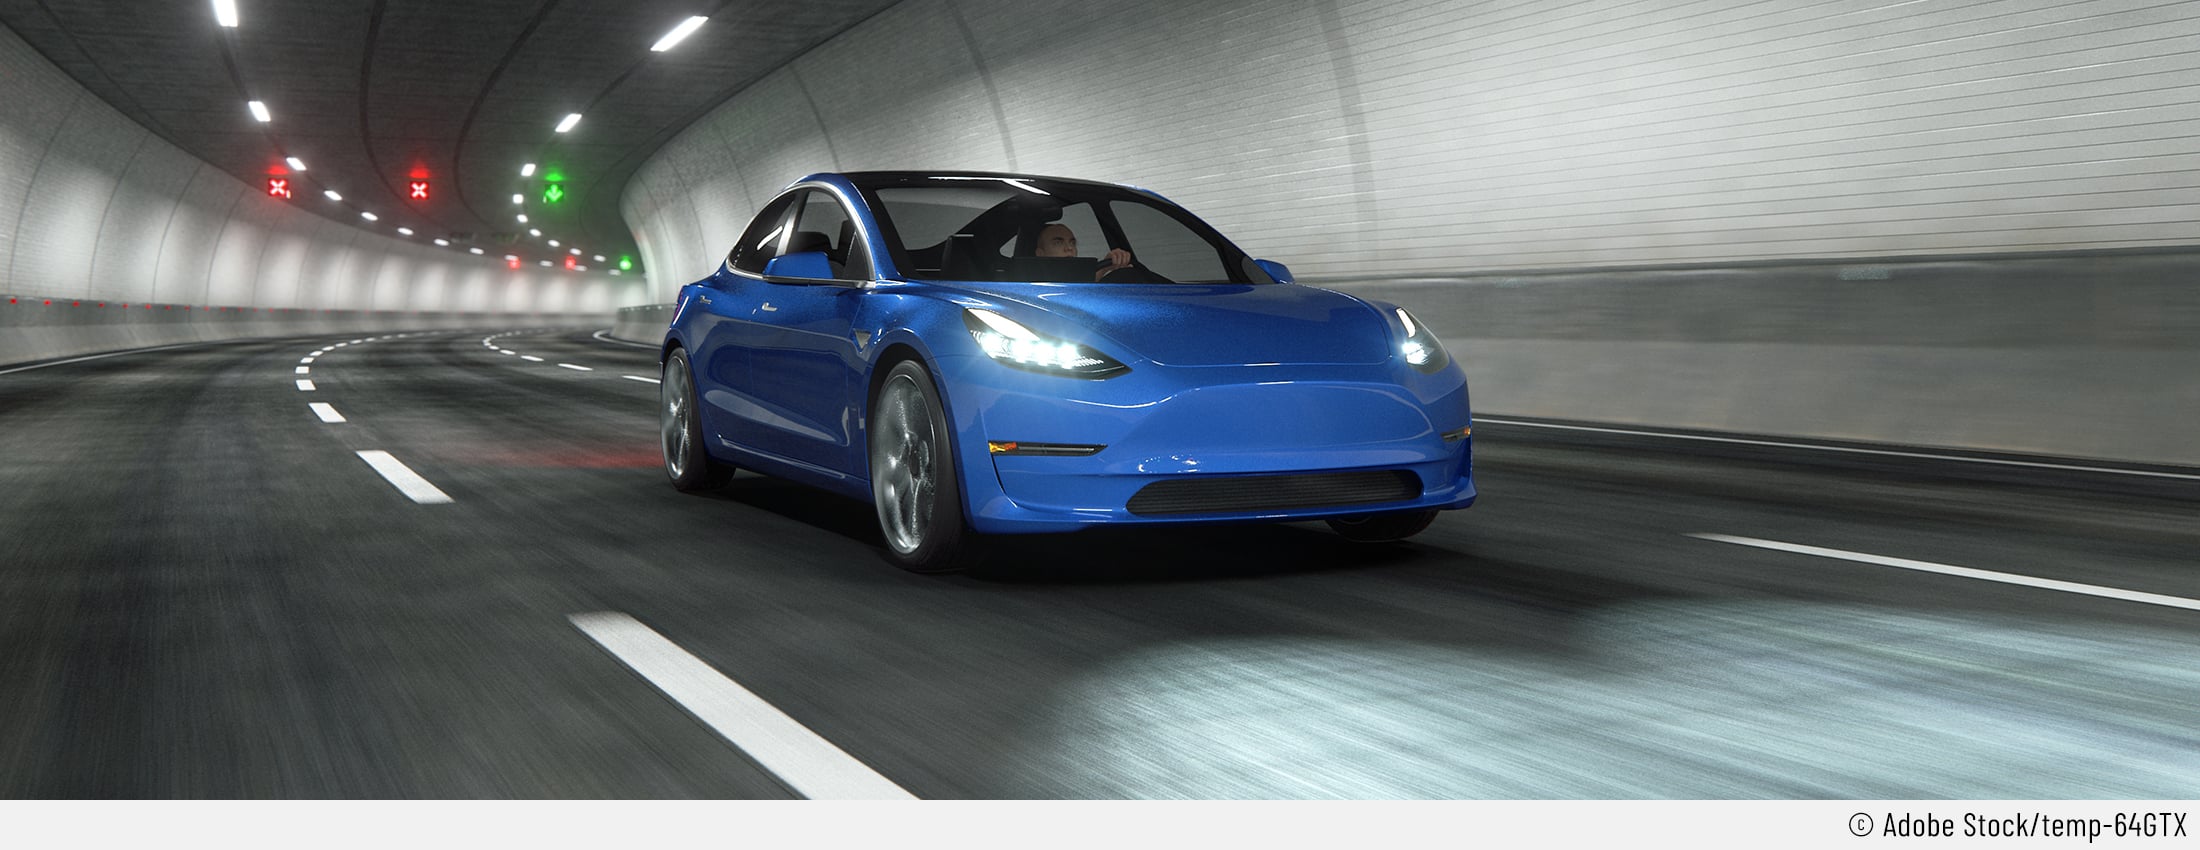 Auf dem Bild ist ein blaues Auto zu sehen, dessen Markenlogo nicht zu sehen ist. Es fährt sehr schnell durch einen Tunnel und es sieht nach einem Tesla ausser Kontrolle aus.